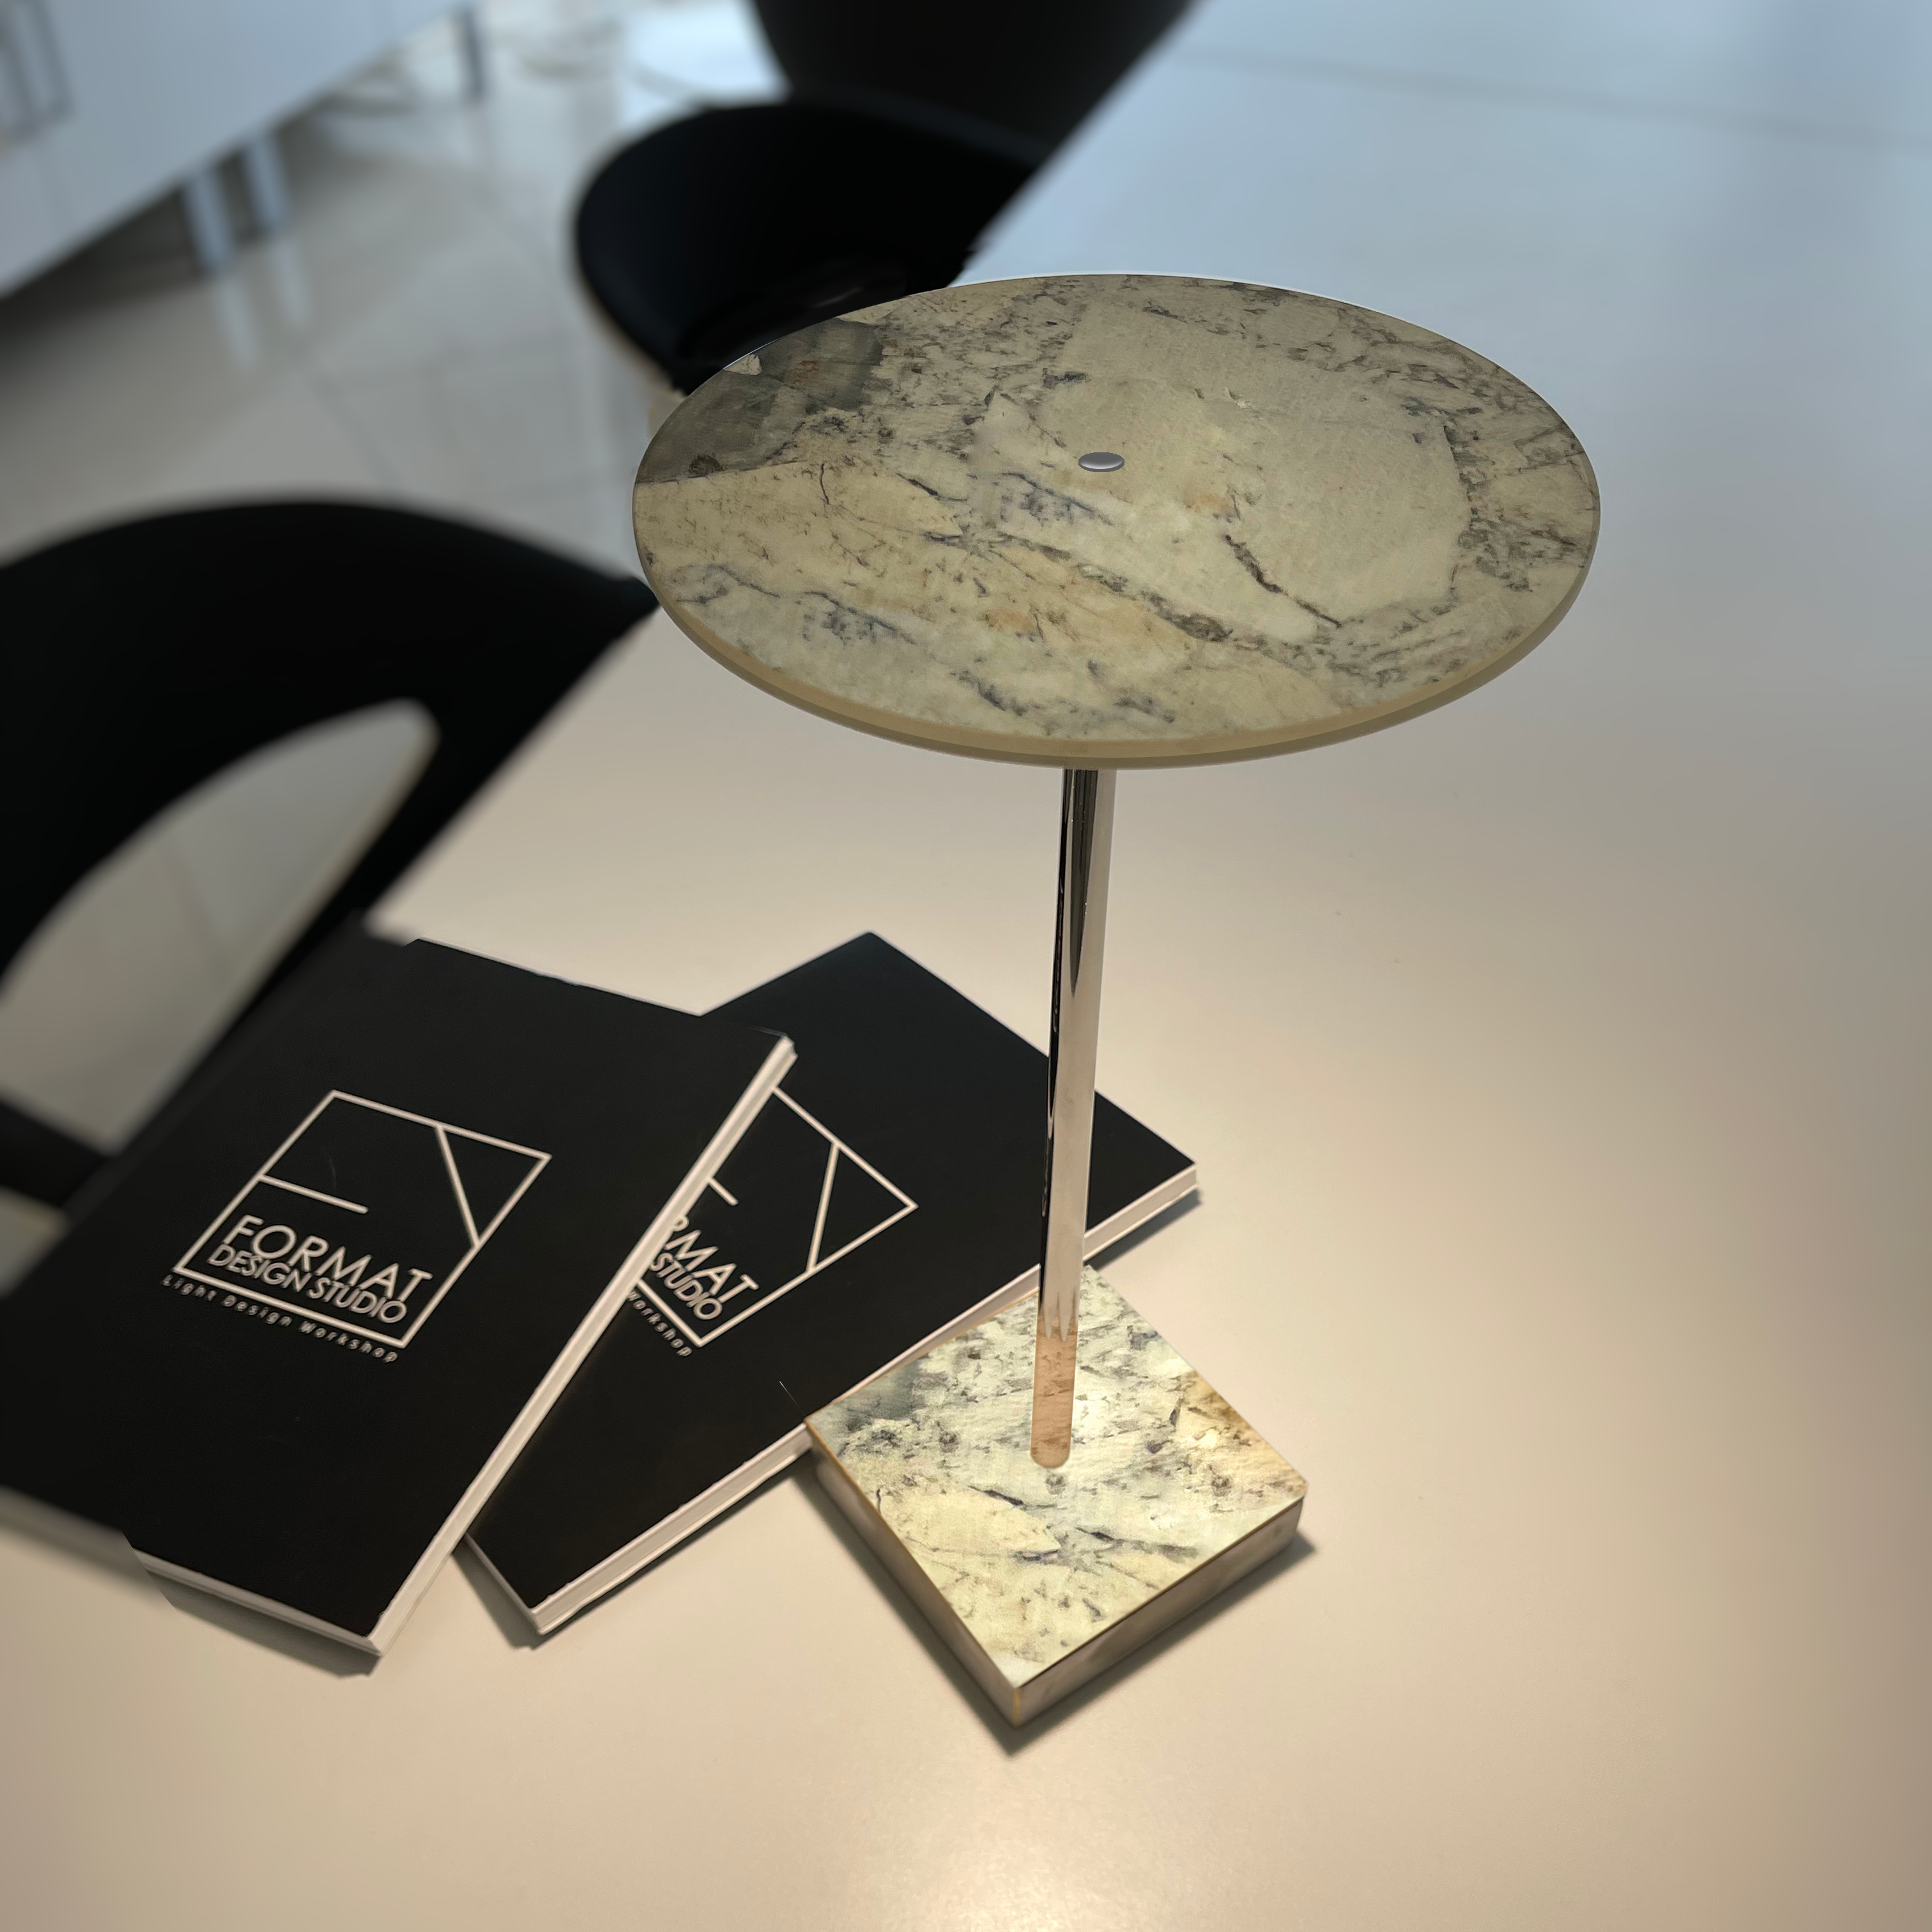 Lampada da tavolo disegnata da Luca turrini titolare della format design studio